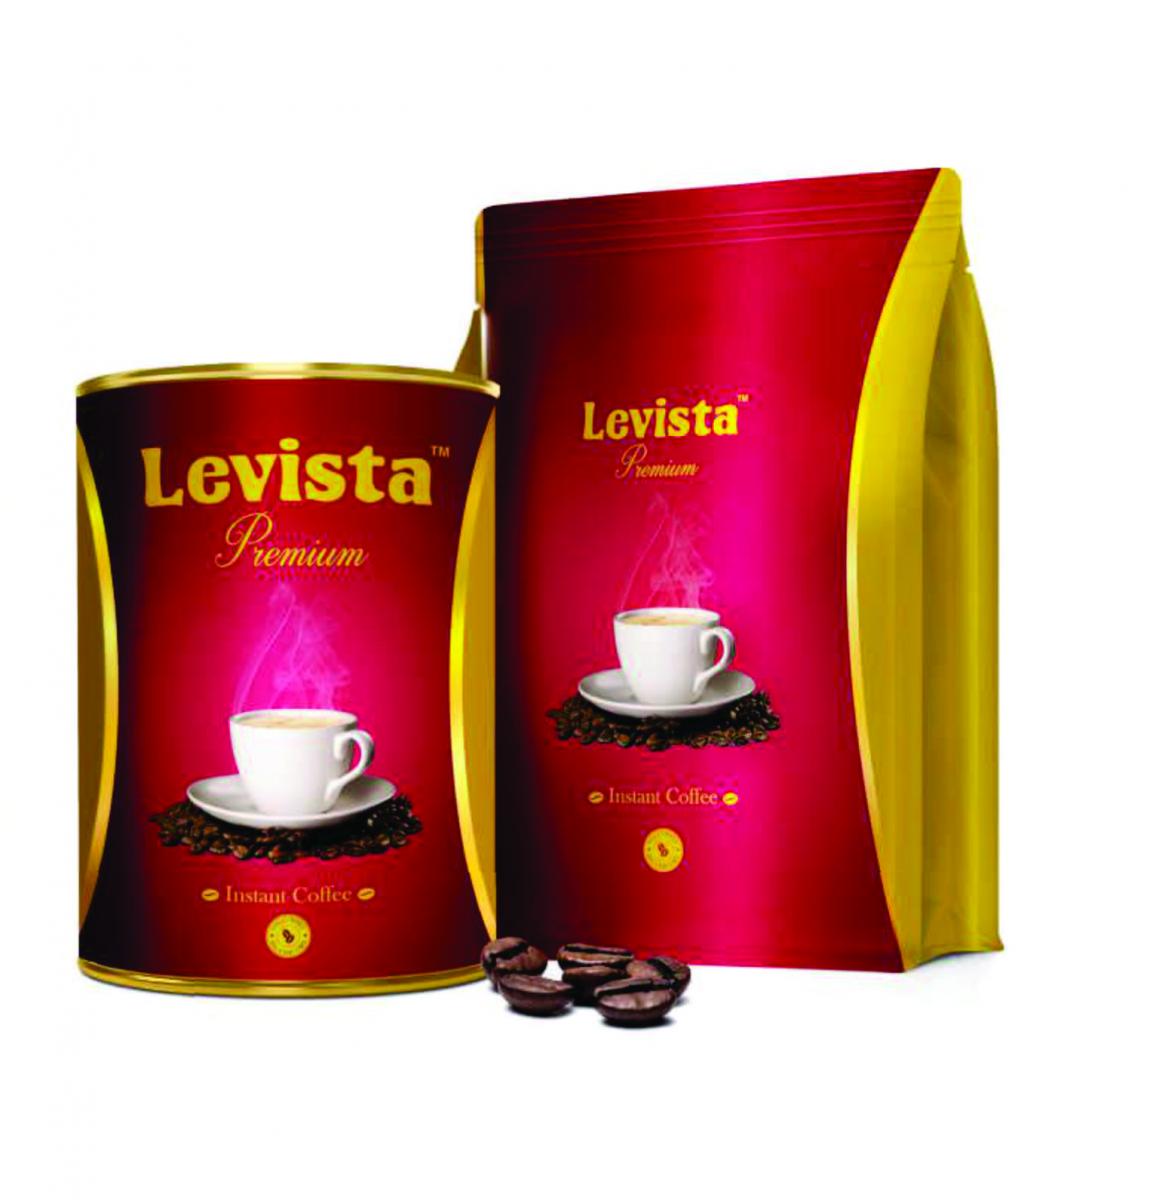 Levista - Premium